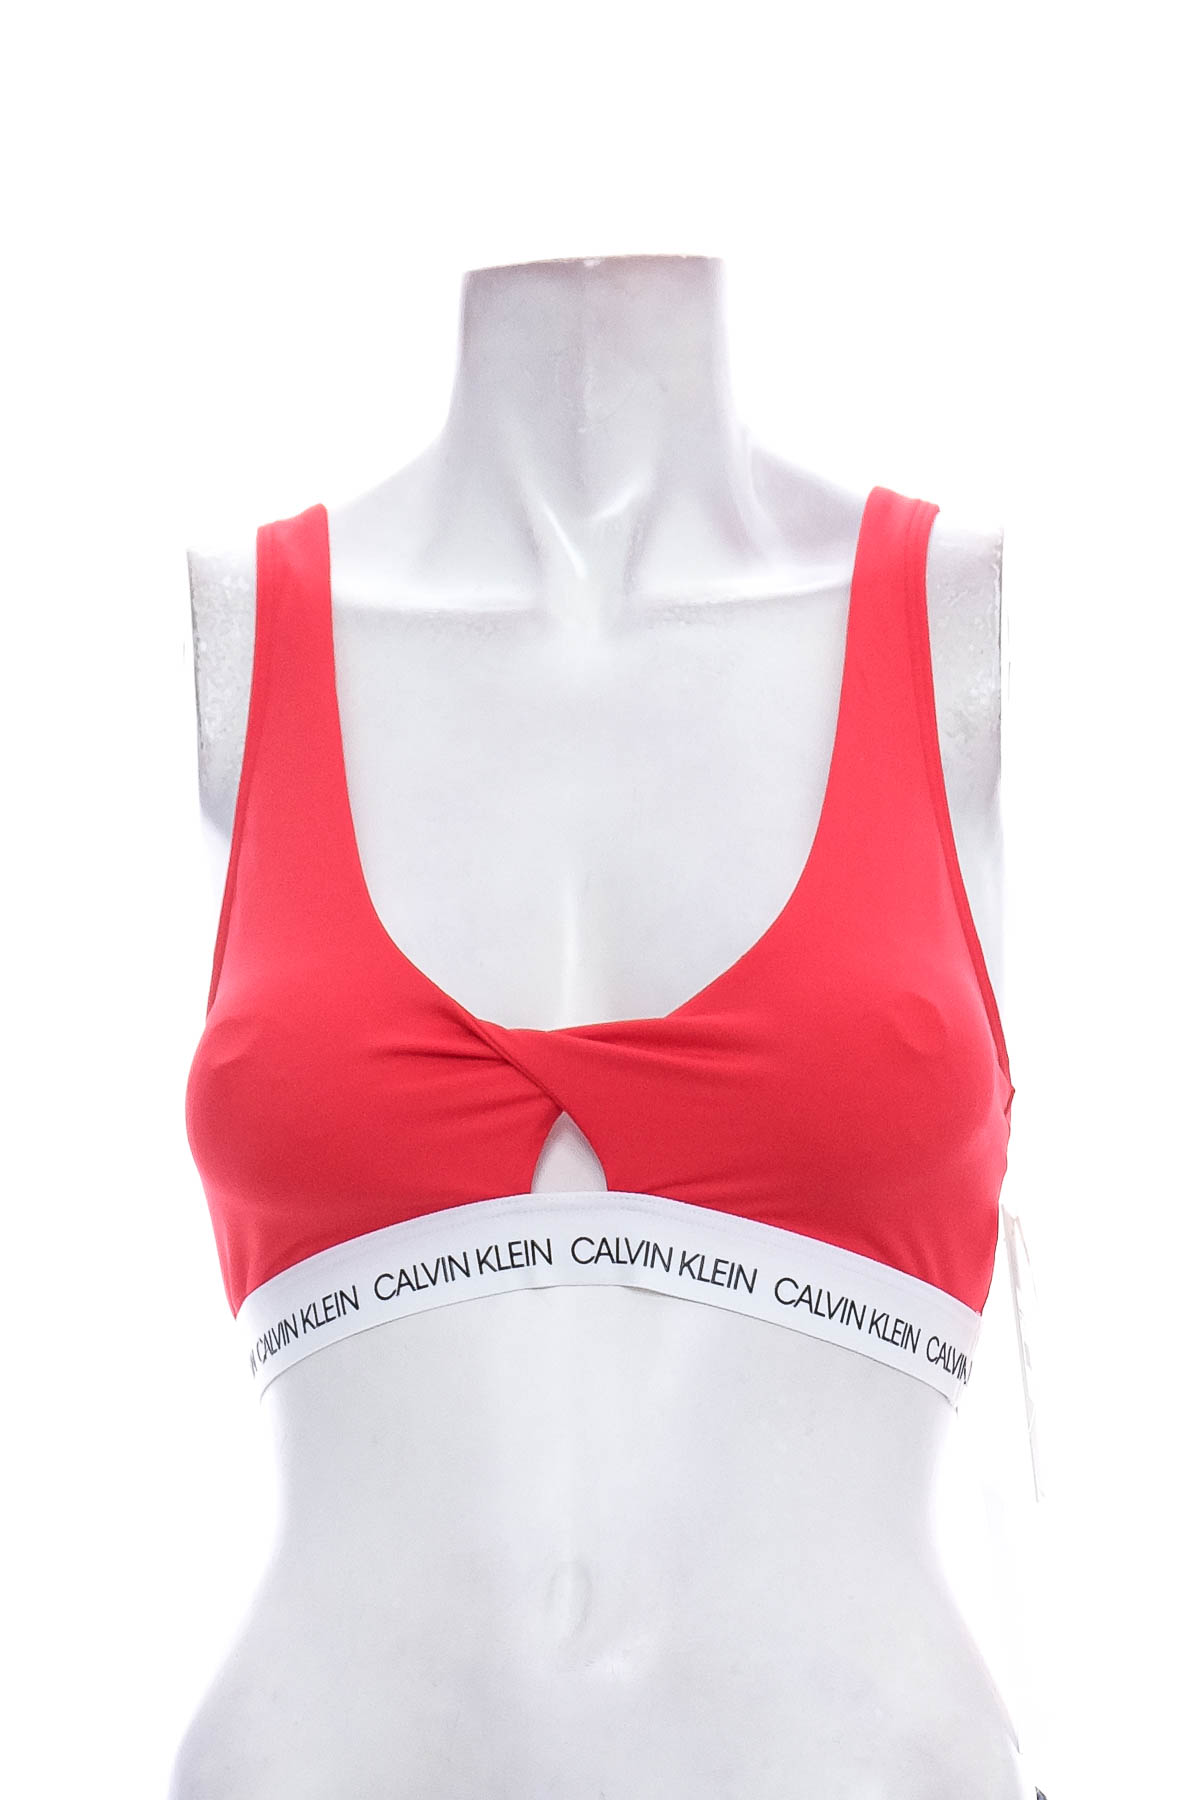 Women's swimsuit bikini top - CALVIN KLEIN SWIMWEAR - 0